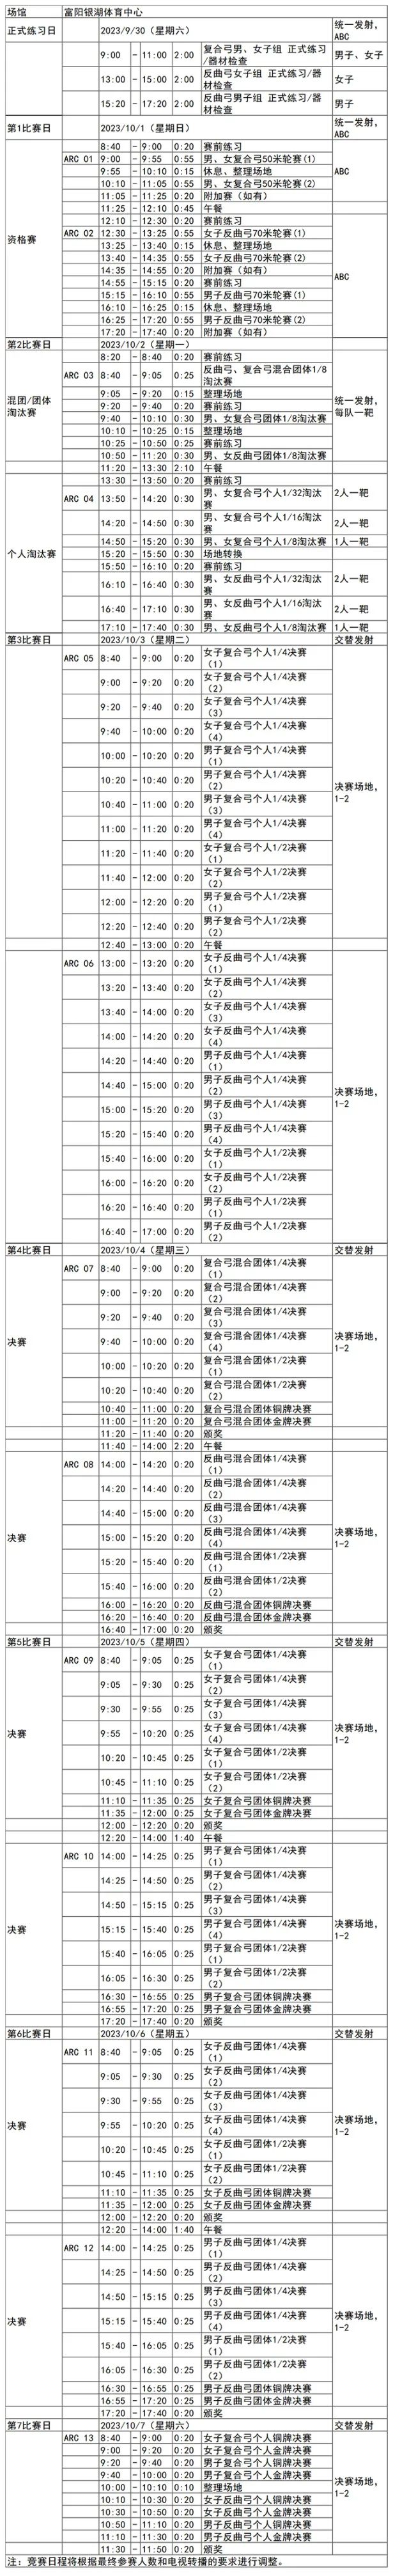 杭州19届亚运会射箭比赛时间表